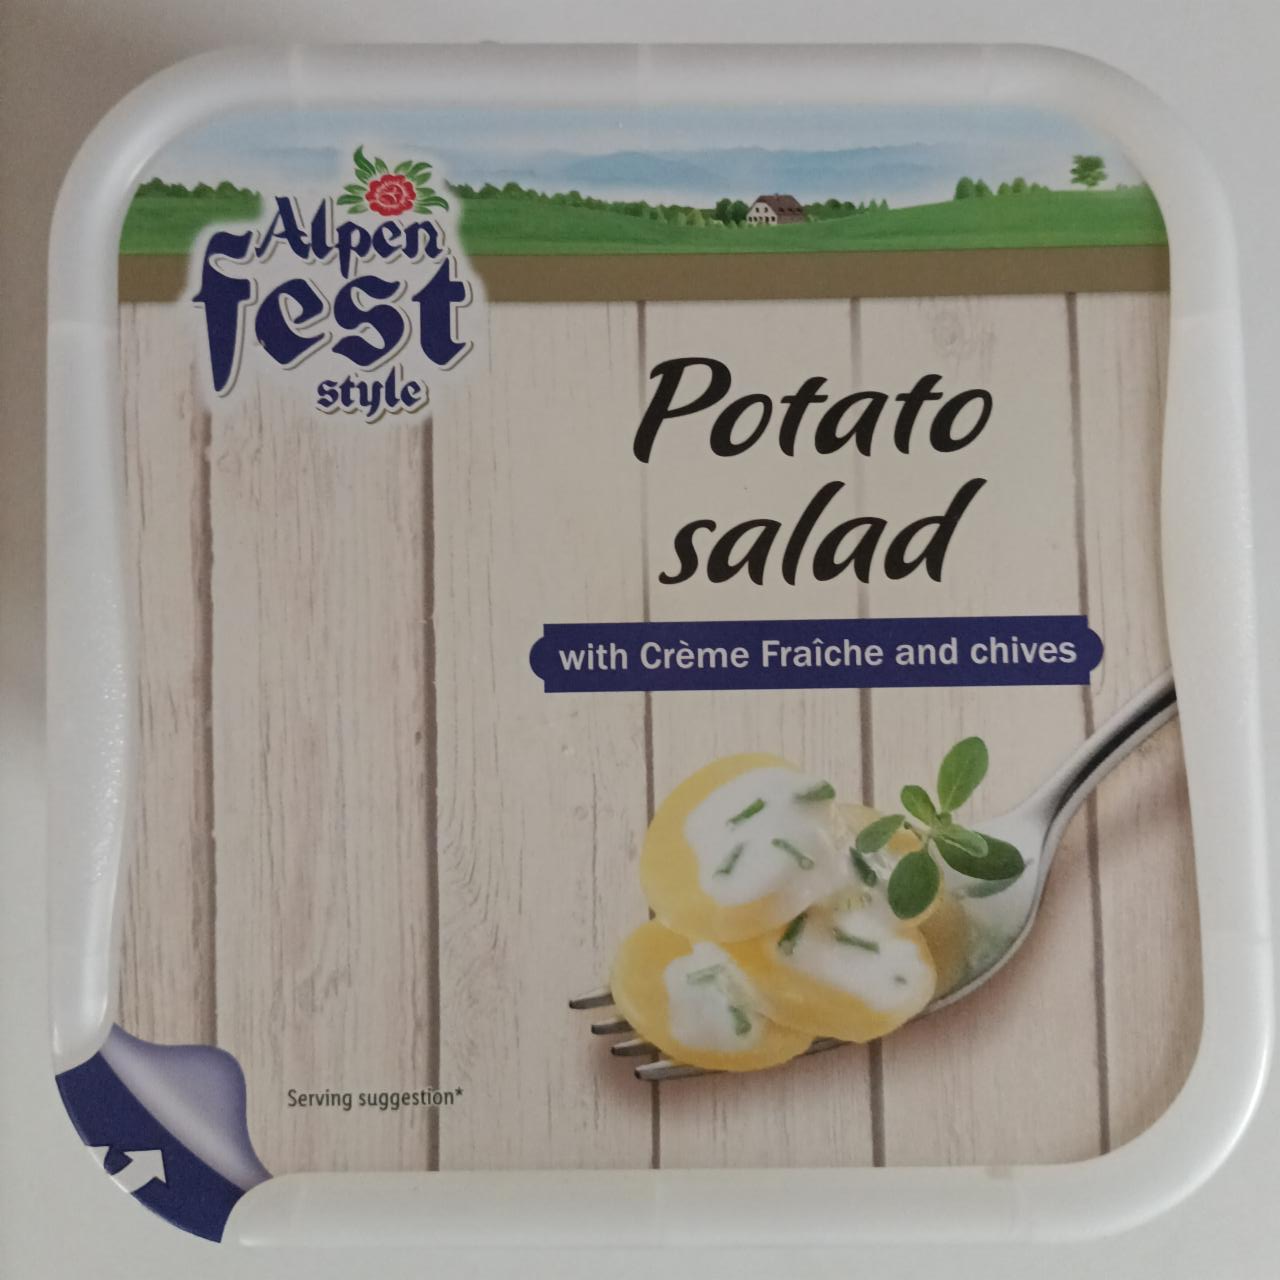 Fotografie - Potato Salad with Crème Fraîche and chives Alpen fest style